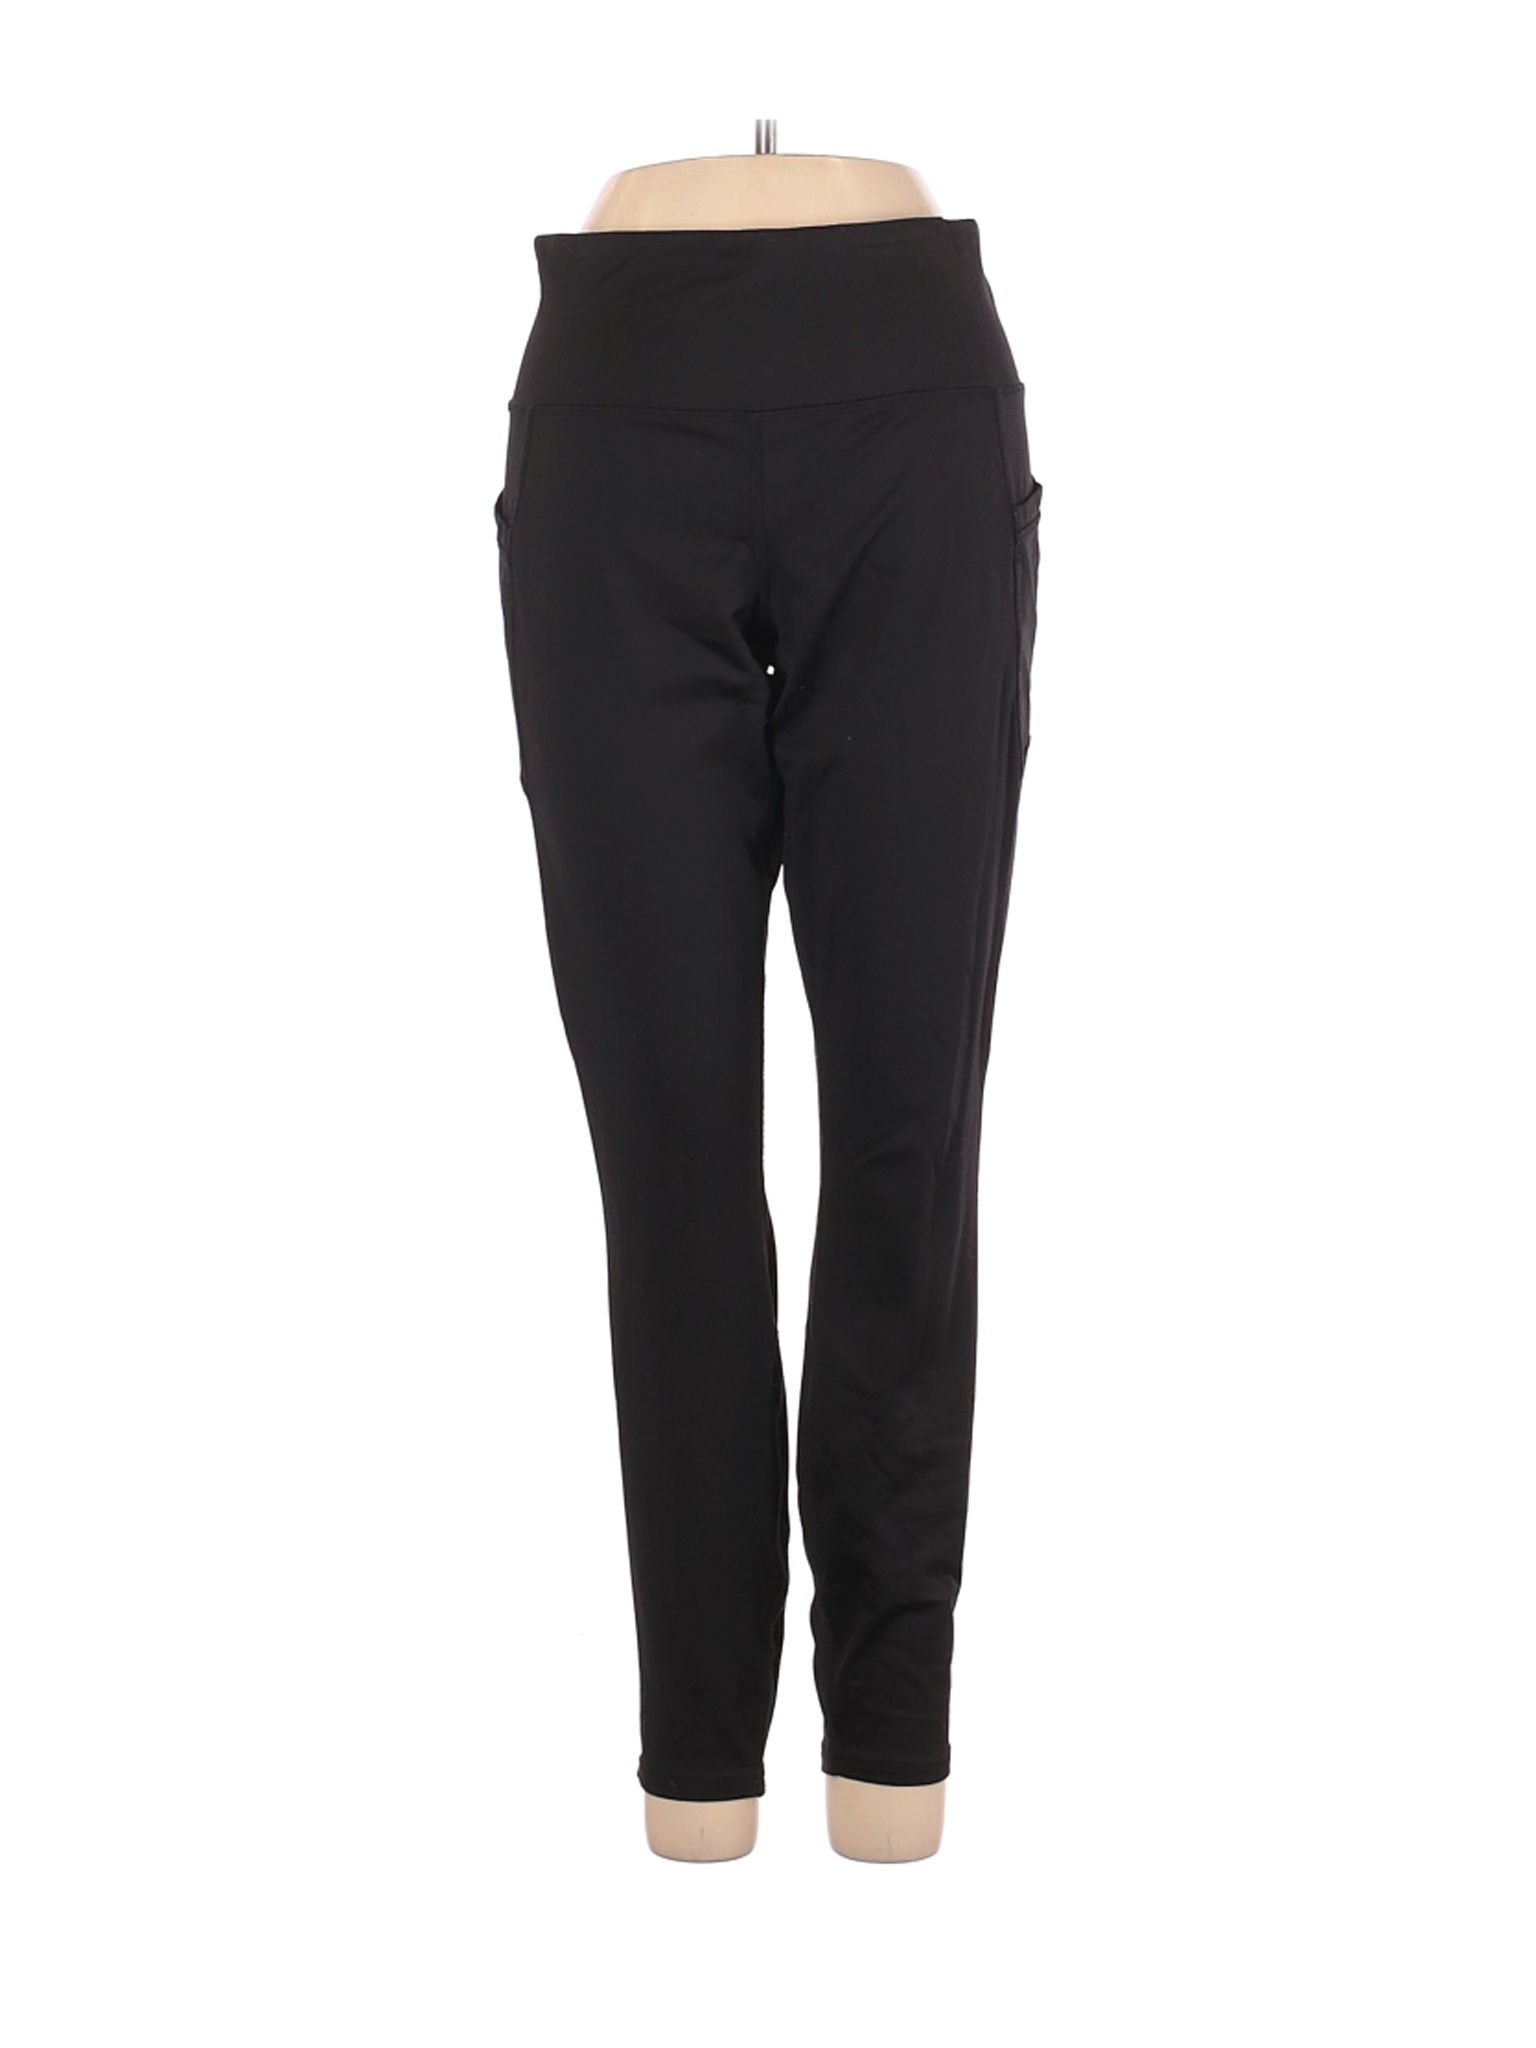 RBX Women Black Active Pants S | eBay